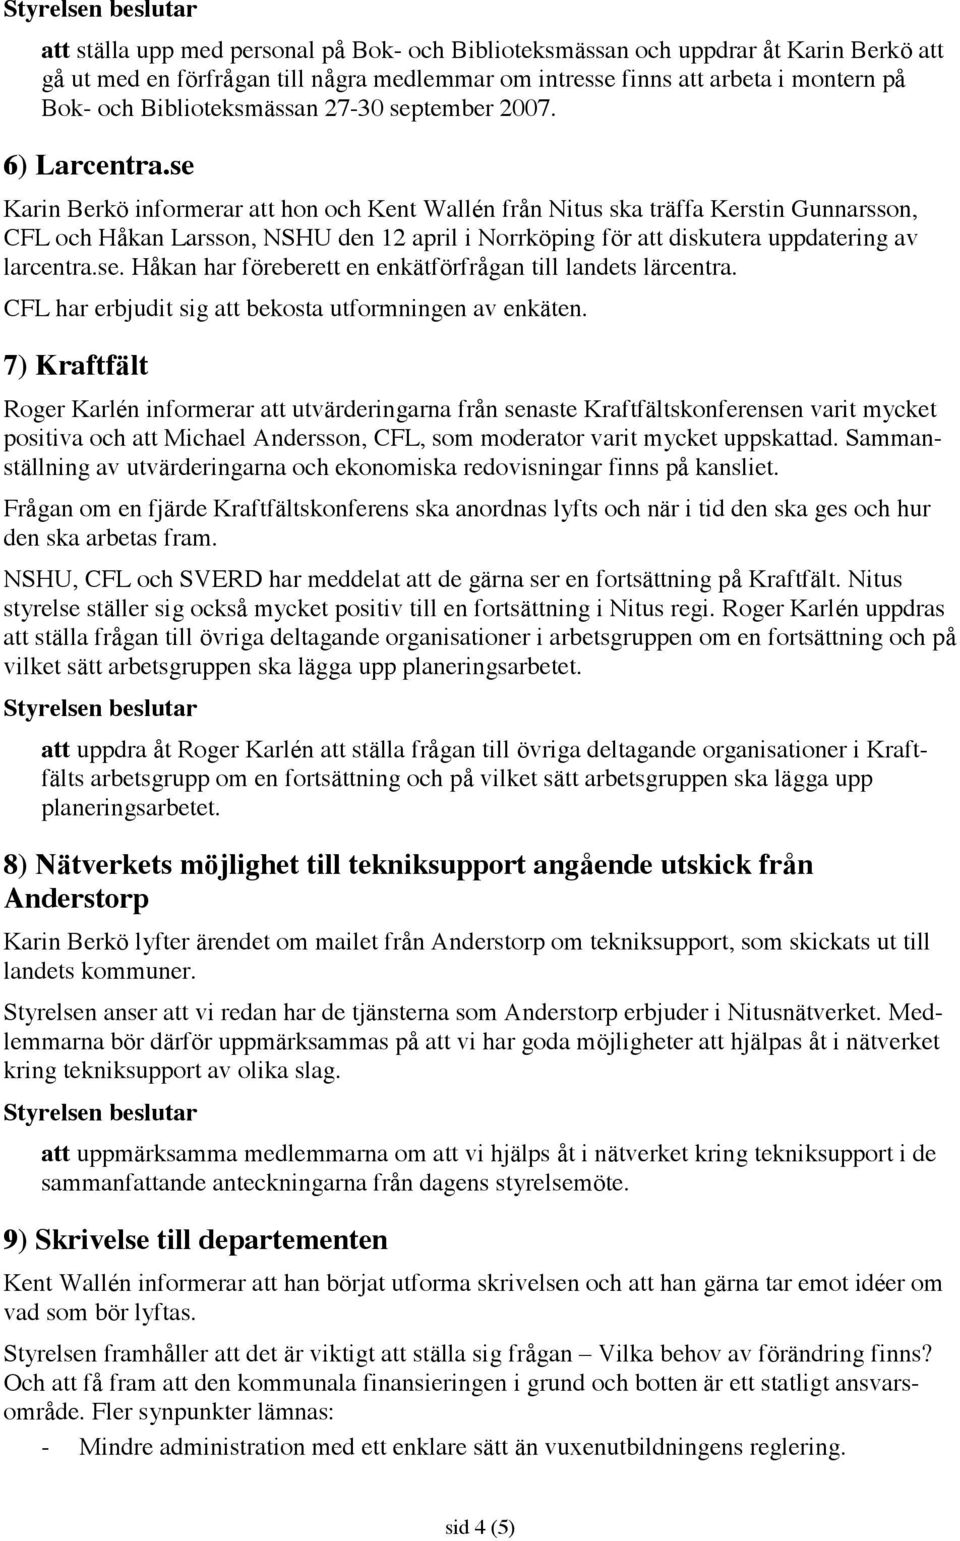 se Karin Berkö informerar att hon och Kent Wallén från Nitus ska träffa Kerstin Gunnarsson, CFL och Håkan Larsson, NSHU den 12 april i Norrköping för att diskutera uppdatering av larcentra.se. Håkan har föreberett en enkätförfrågan till landets lärcentra.